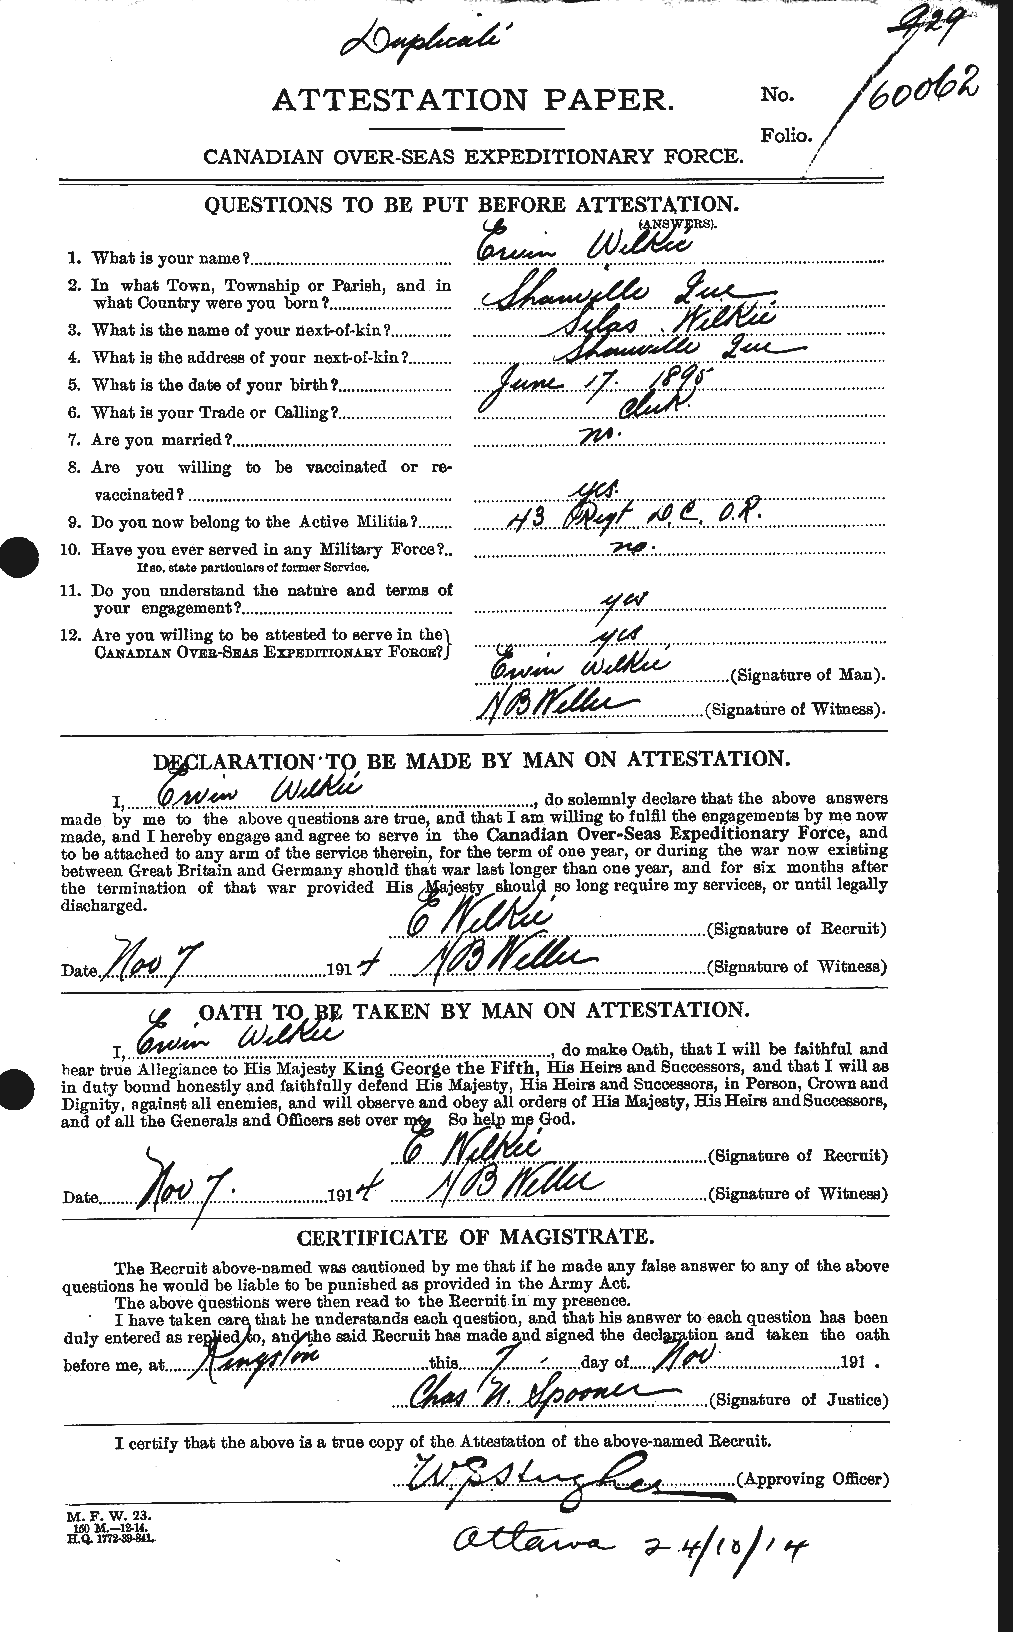 Dossiers du Personnel de la Première Guerre mondiale - CEC 680427a